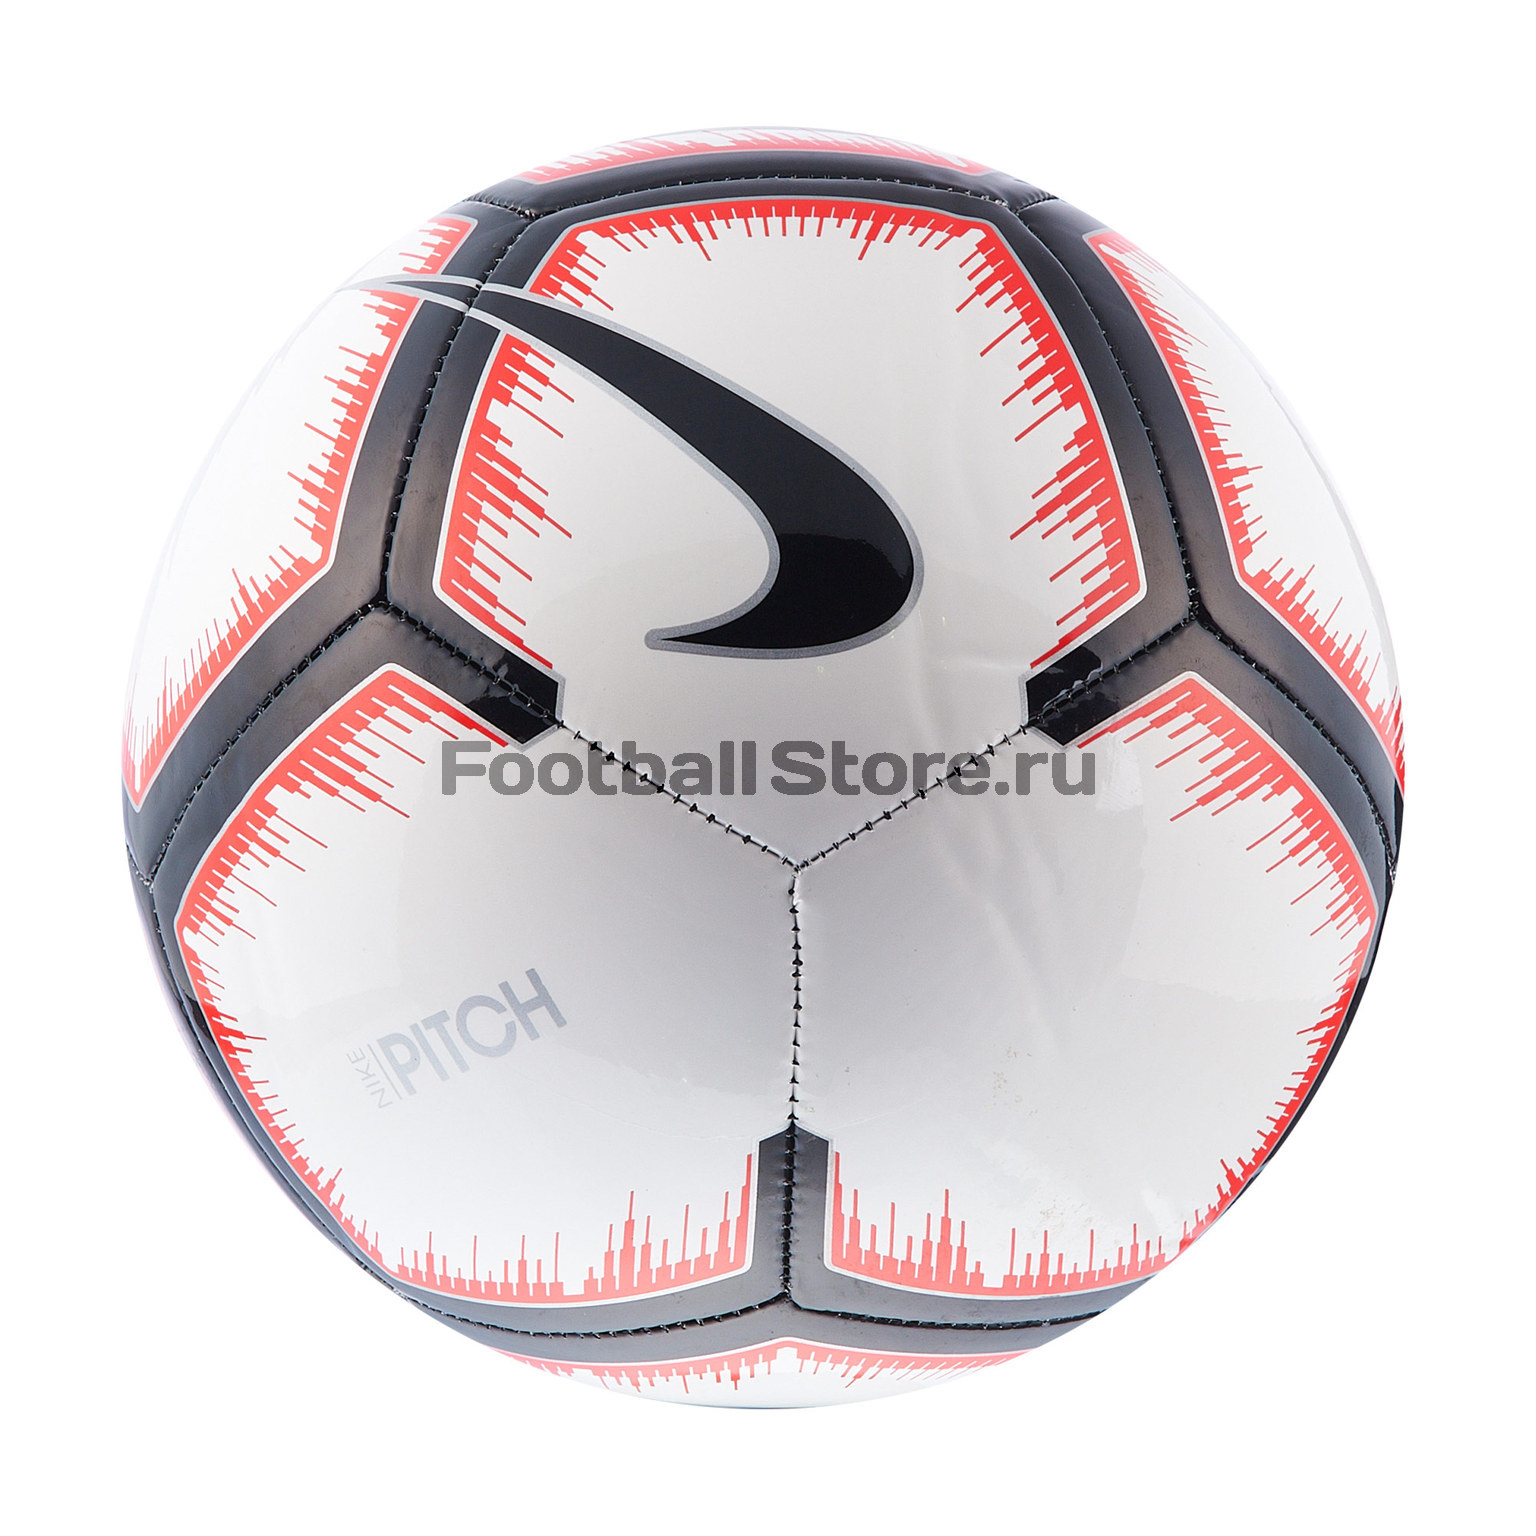 Футбольный мяч Nike RPL (Россия) Pitch SC3515-100